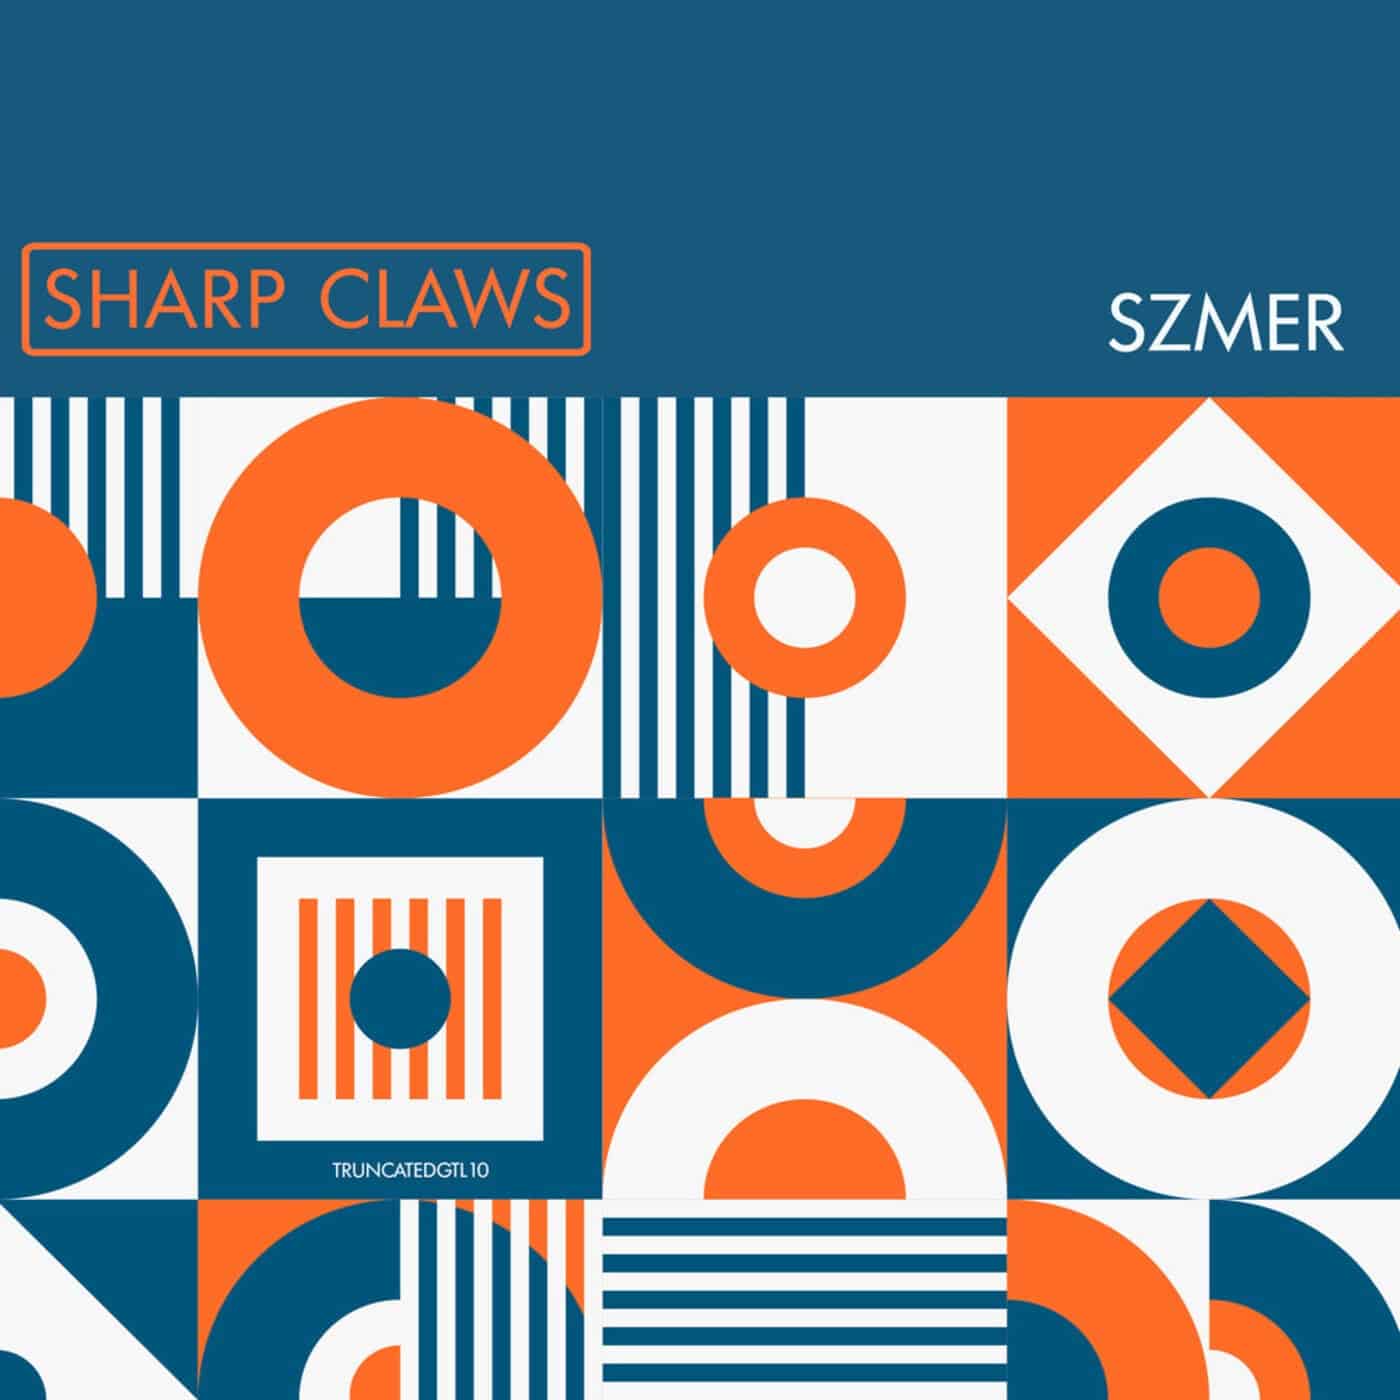 image cover: Szmer - Sharp Claws / TRUNCATEDGTL10